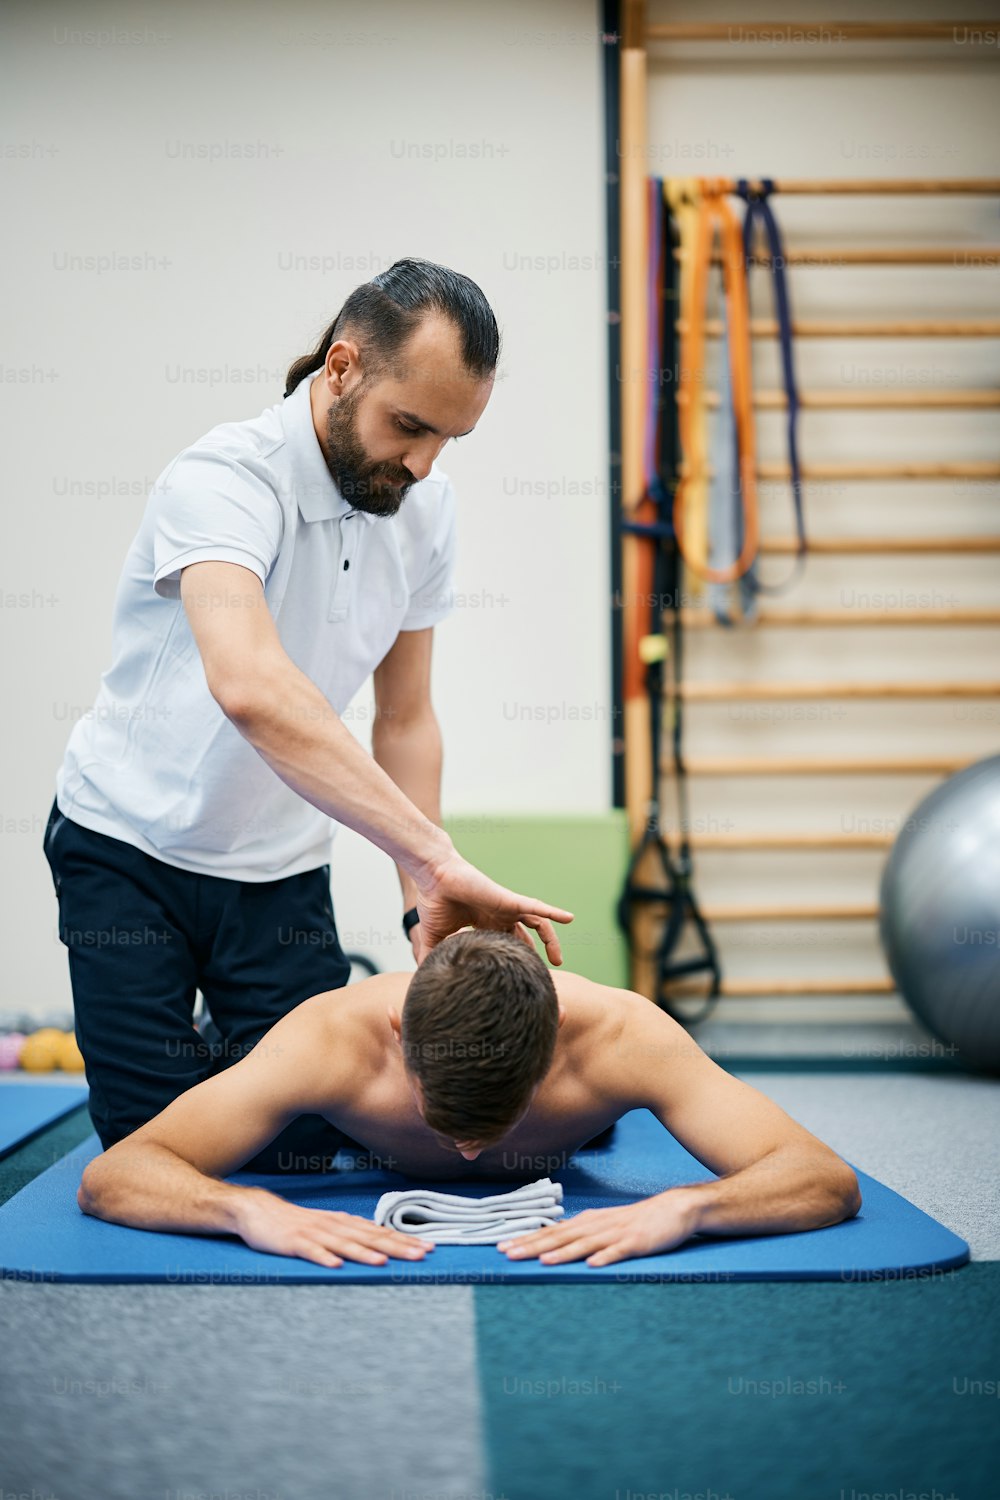 Fisioterapista che massaggia il collo dell'atleta durante il trattamento di riabilitazione presso il centro benessere.